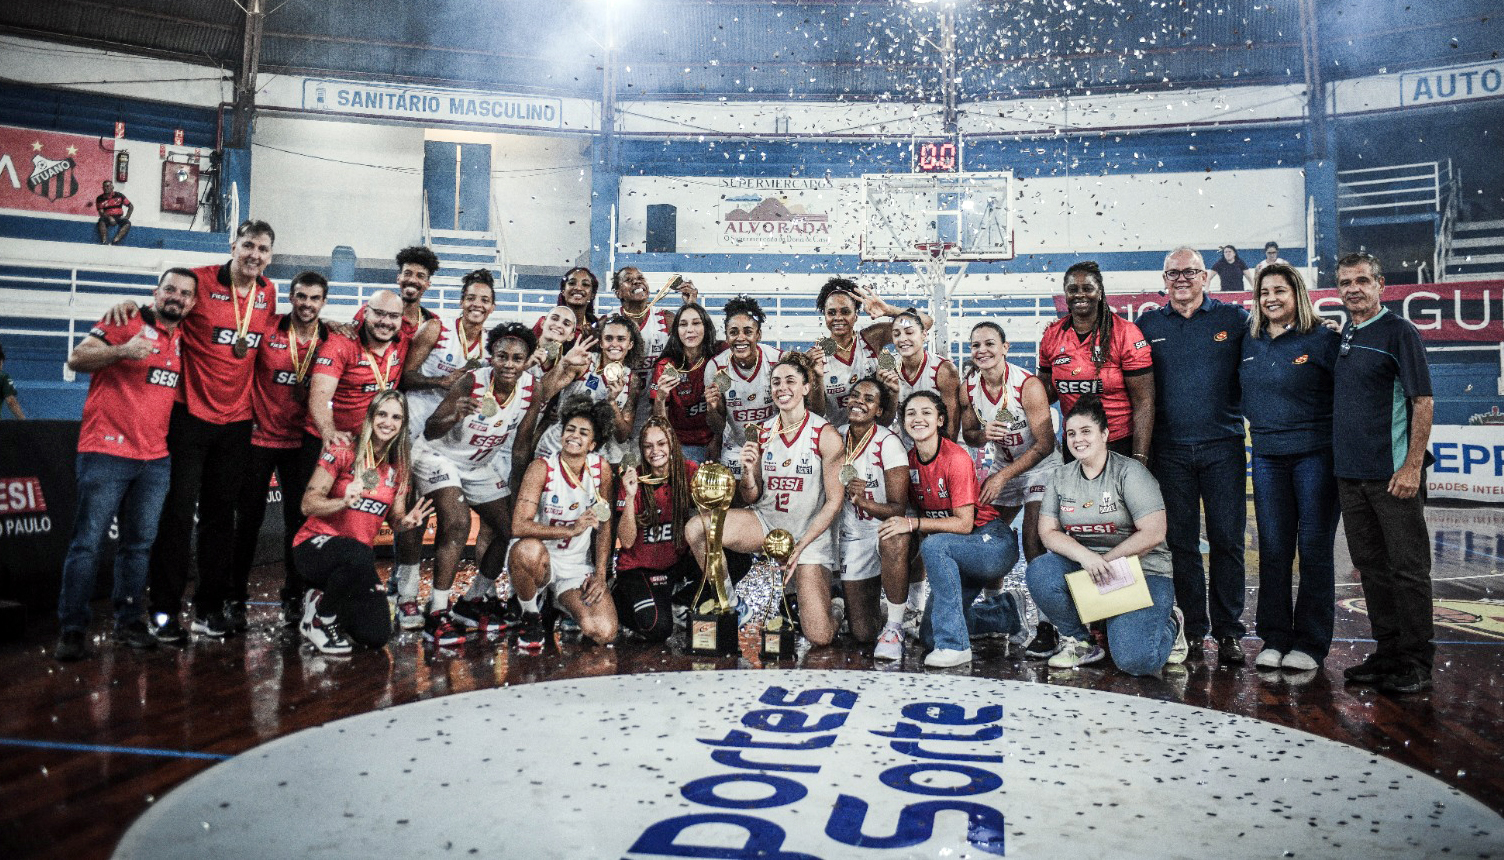 AD Santo André disputa finais do Campeonato Paulista Feminino de Basquete